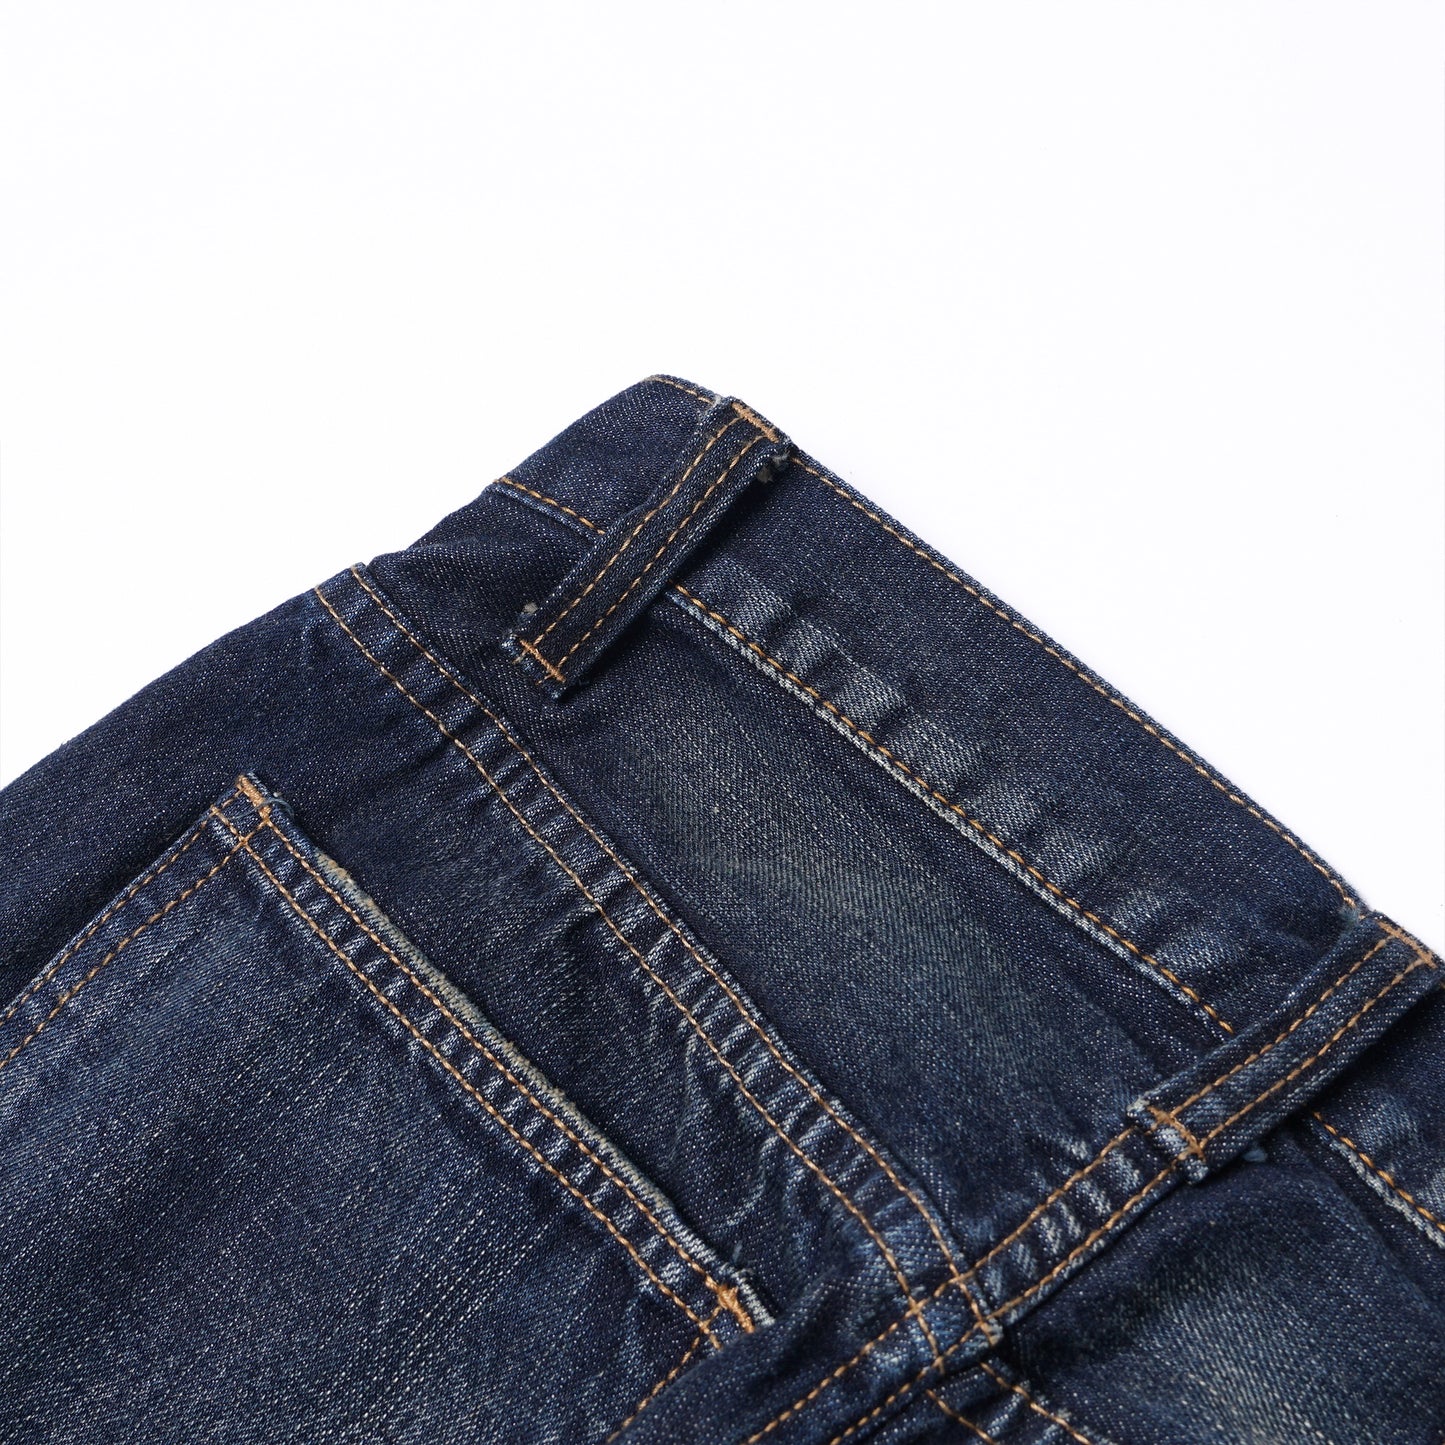 【訂製】RIV 2 Years 14oz. Washed Shorts Jeans